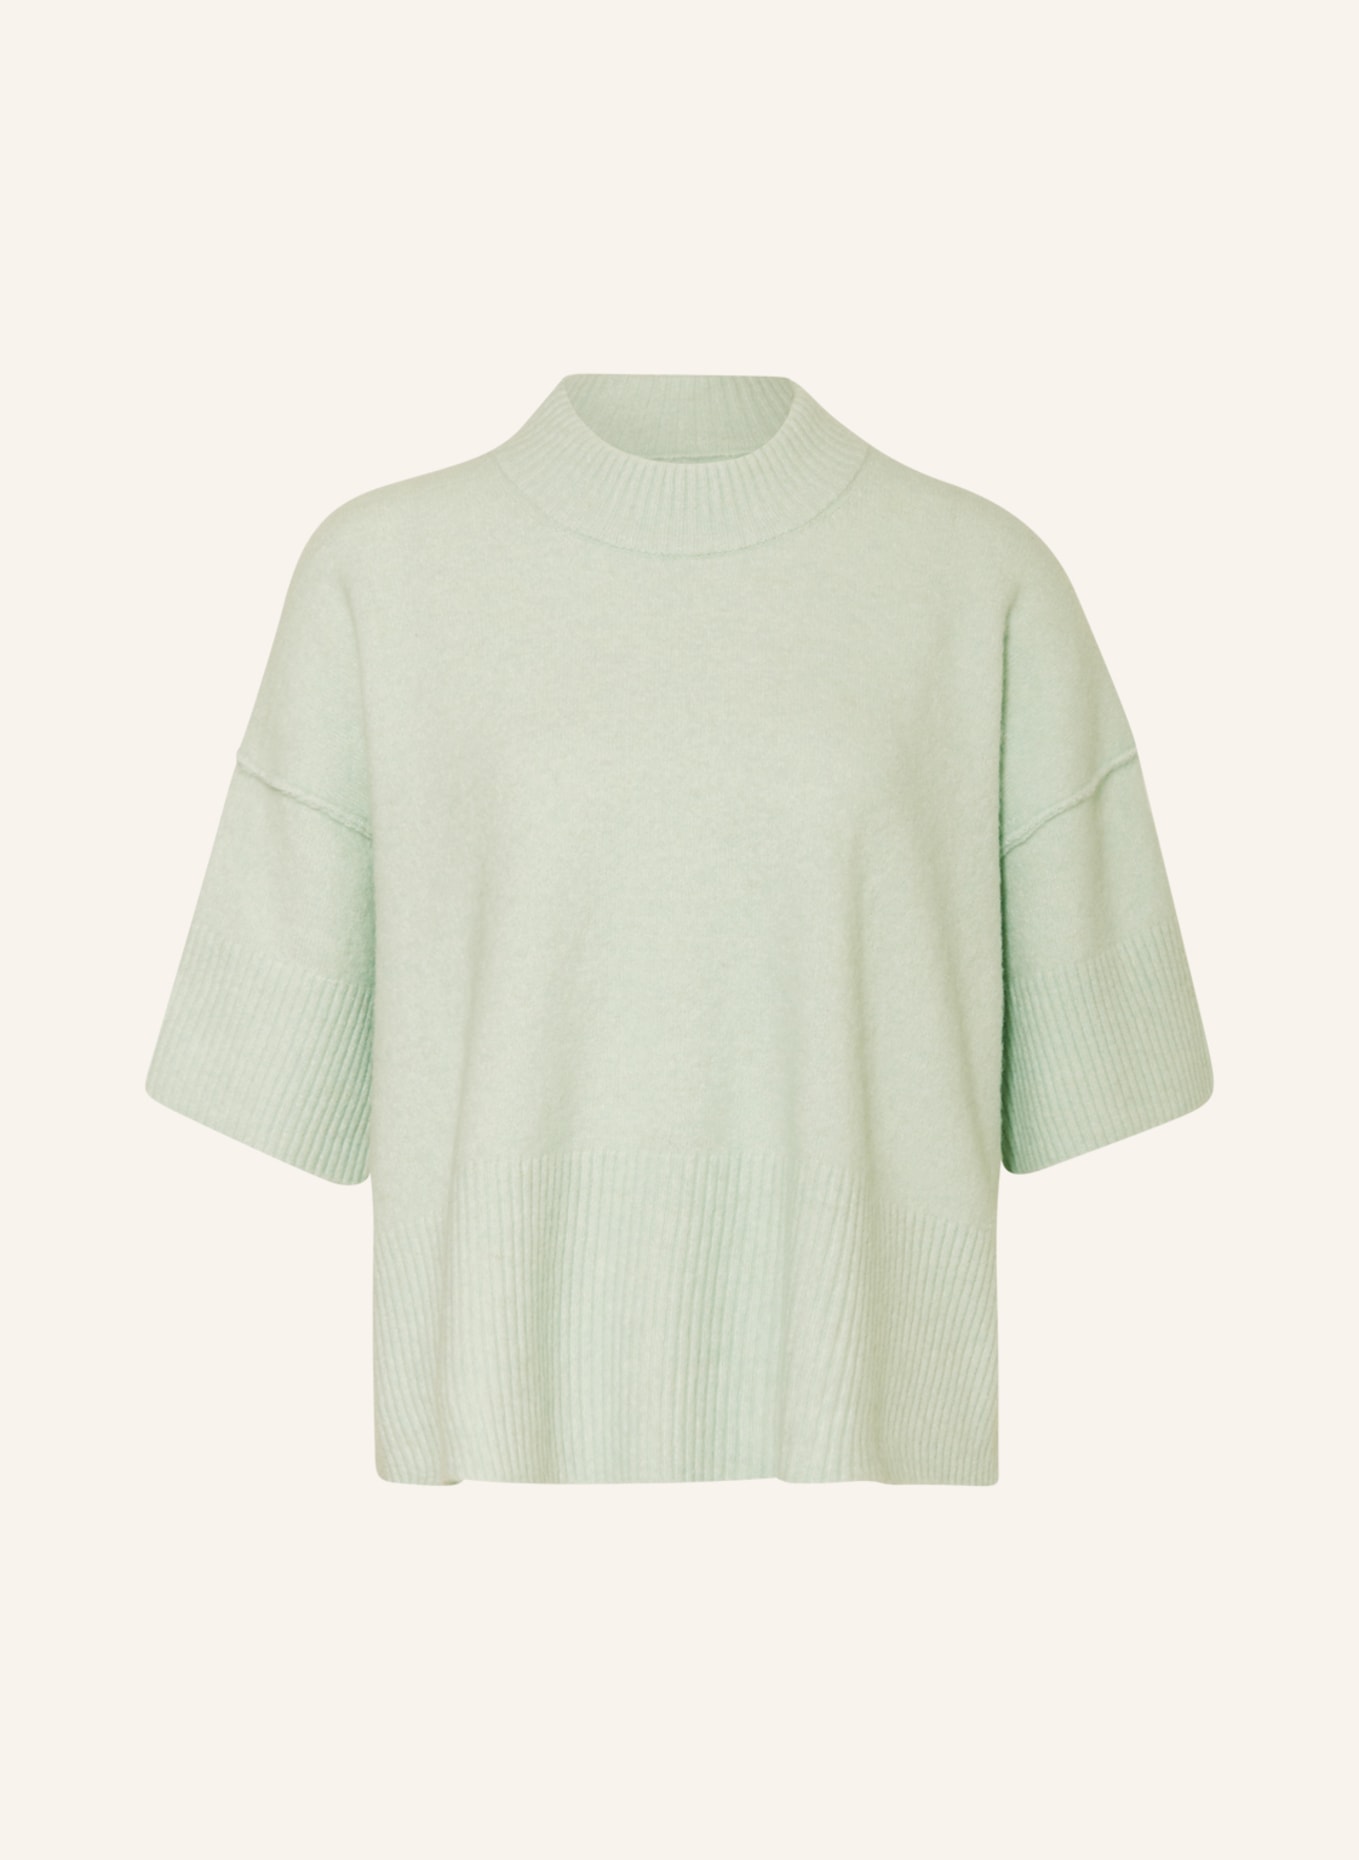 DAY BIRGER et MIKKELSEN Knit shirt ACACIA with alpaca, Color: MINT (Image 1)